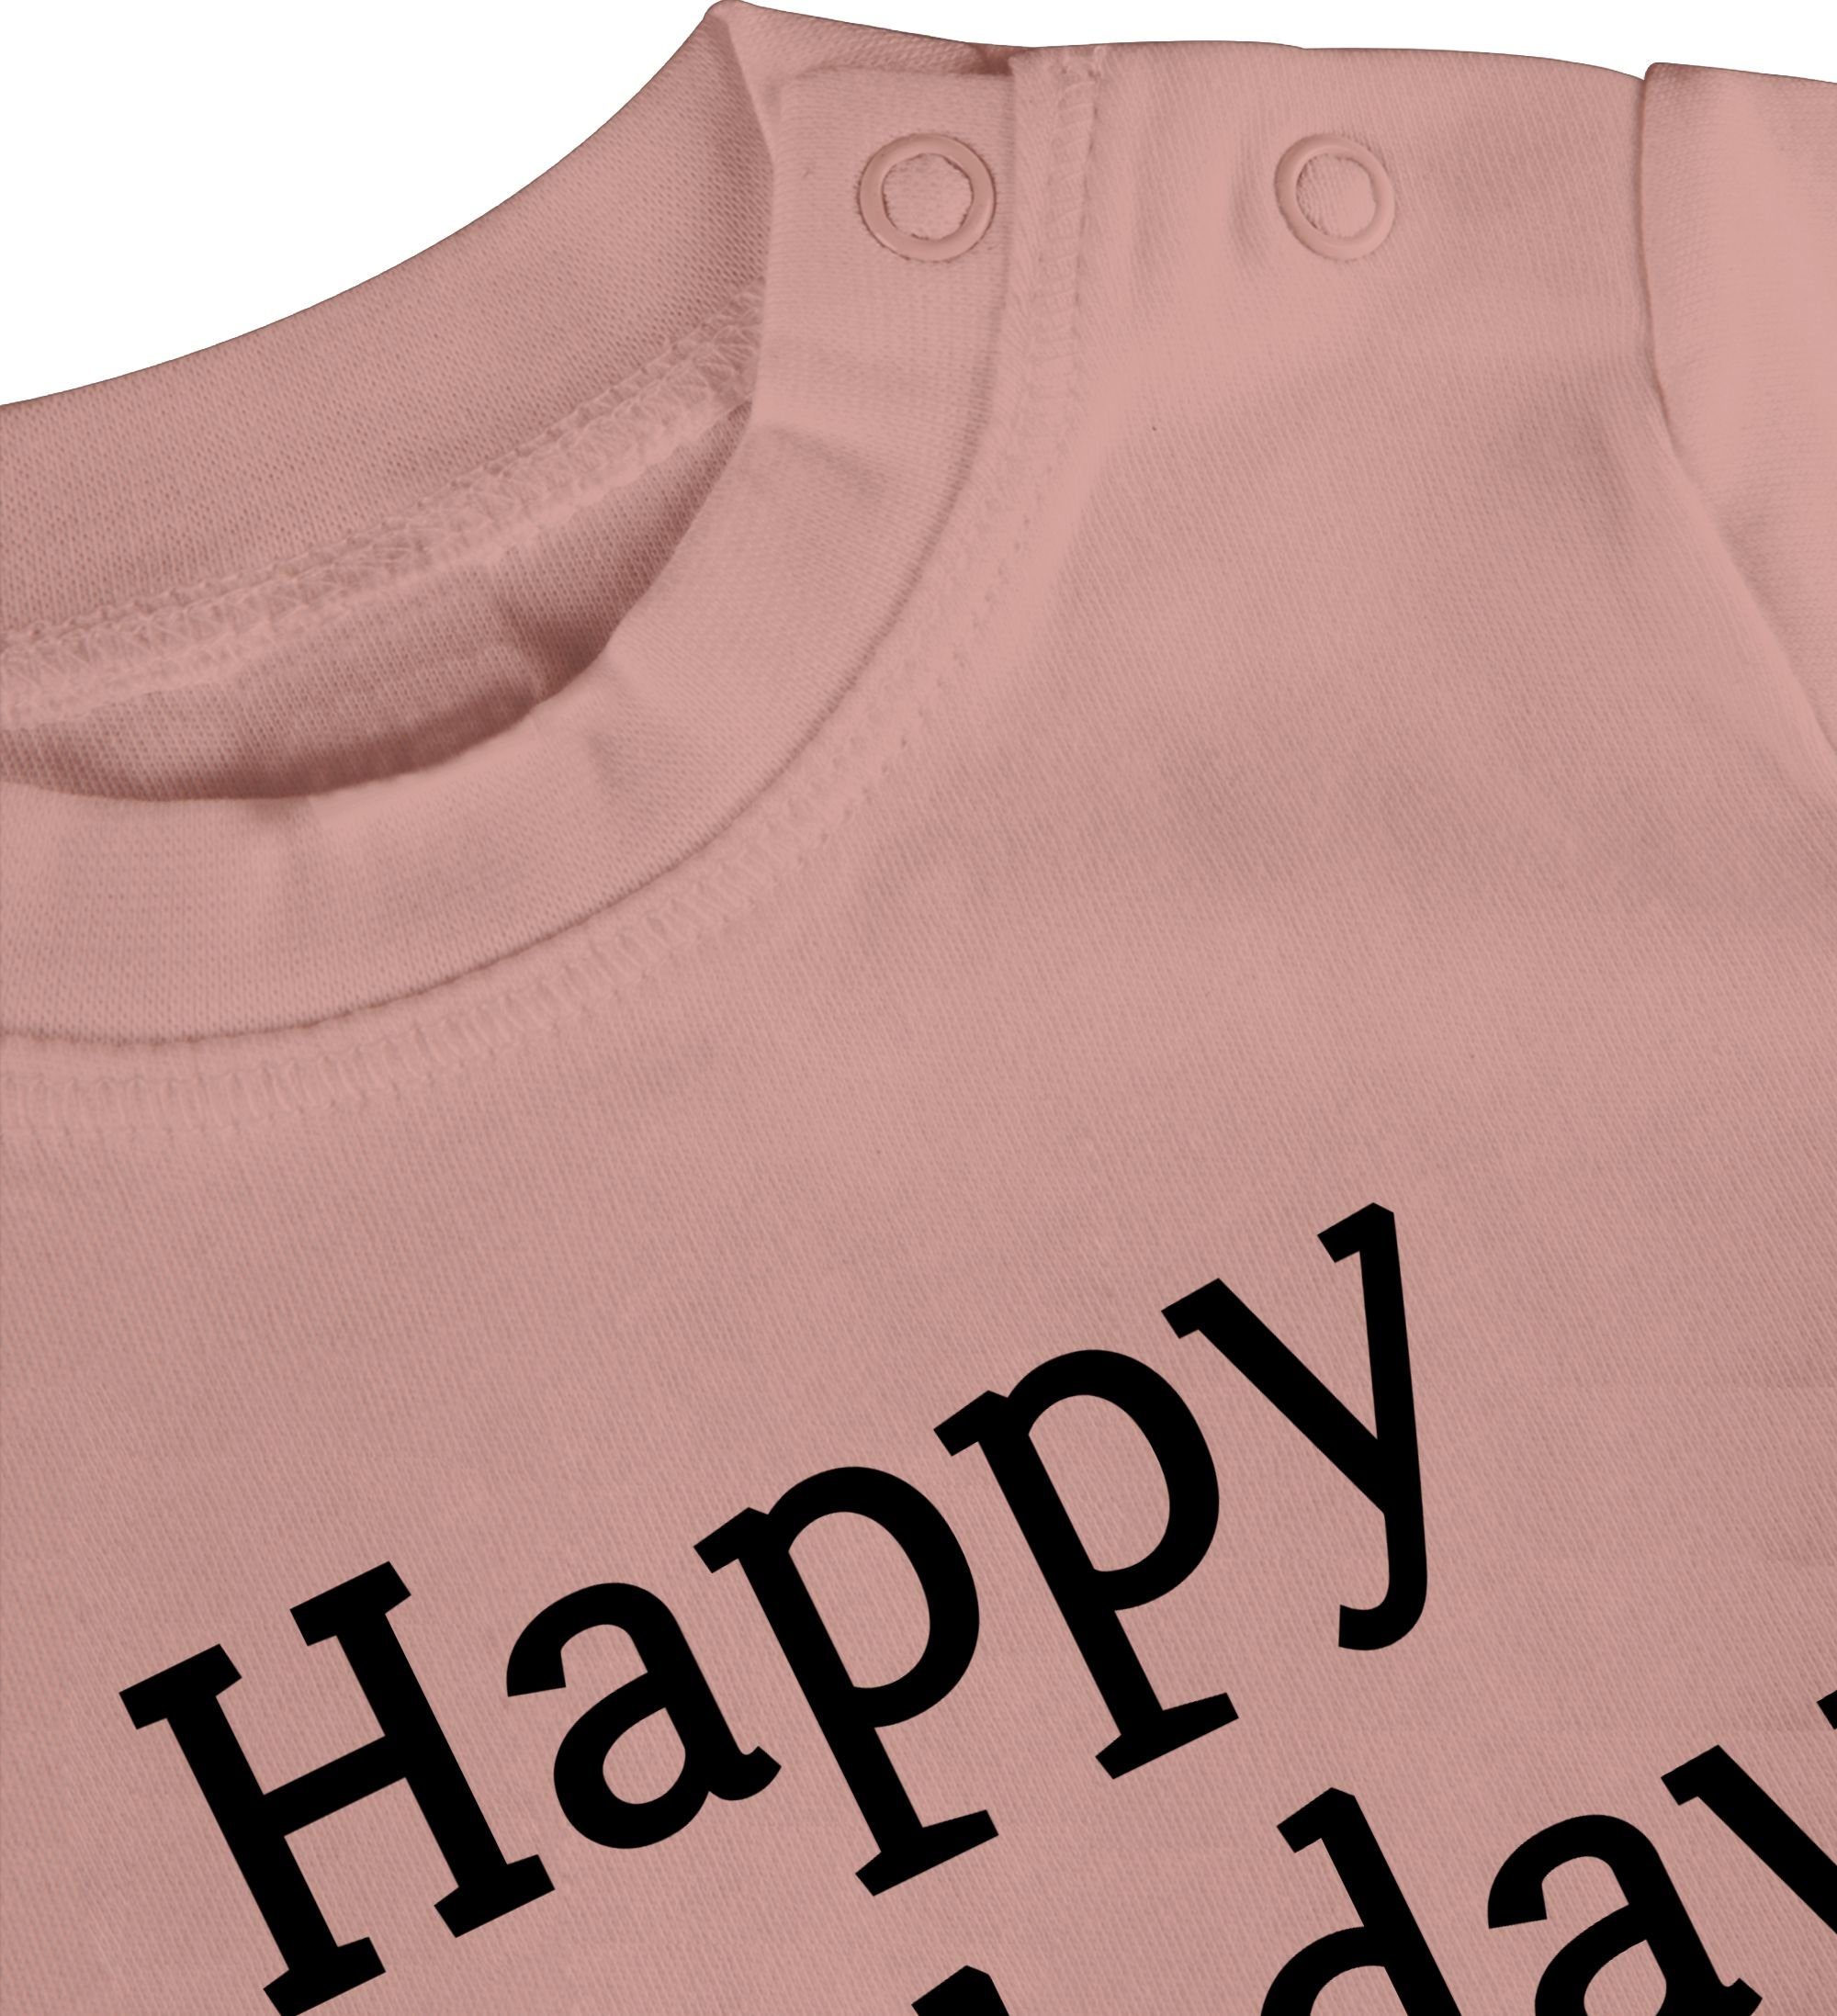 Shirtracer T-Shirt Happy Birthday Mama! das Babyrosa Geschenke Geschenk! Baby 1 Event Ich bin